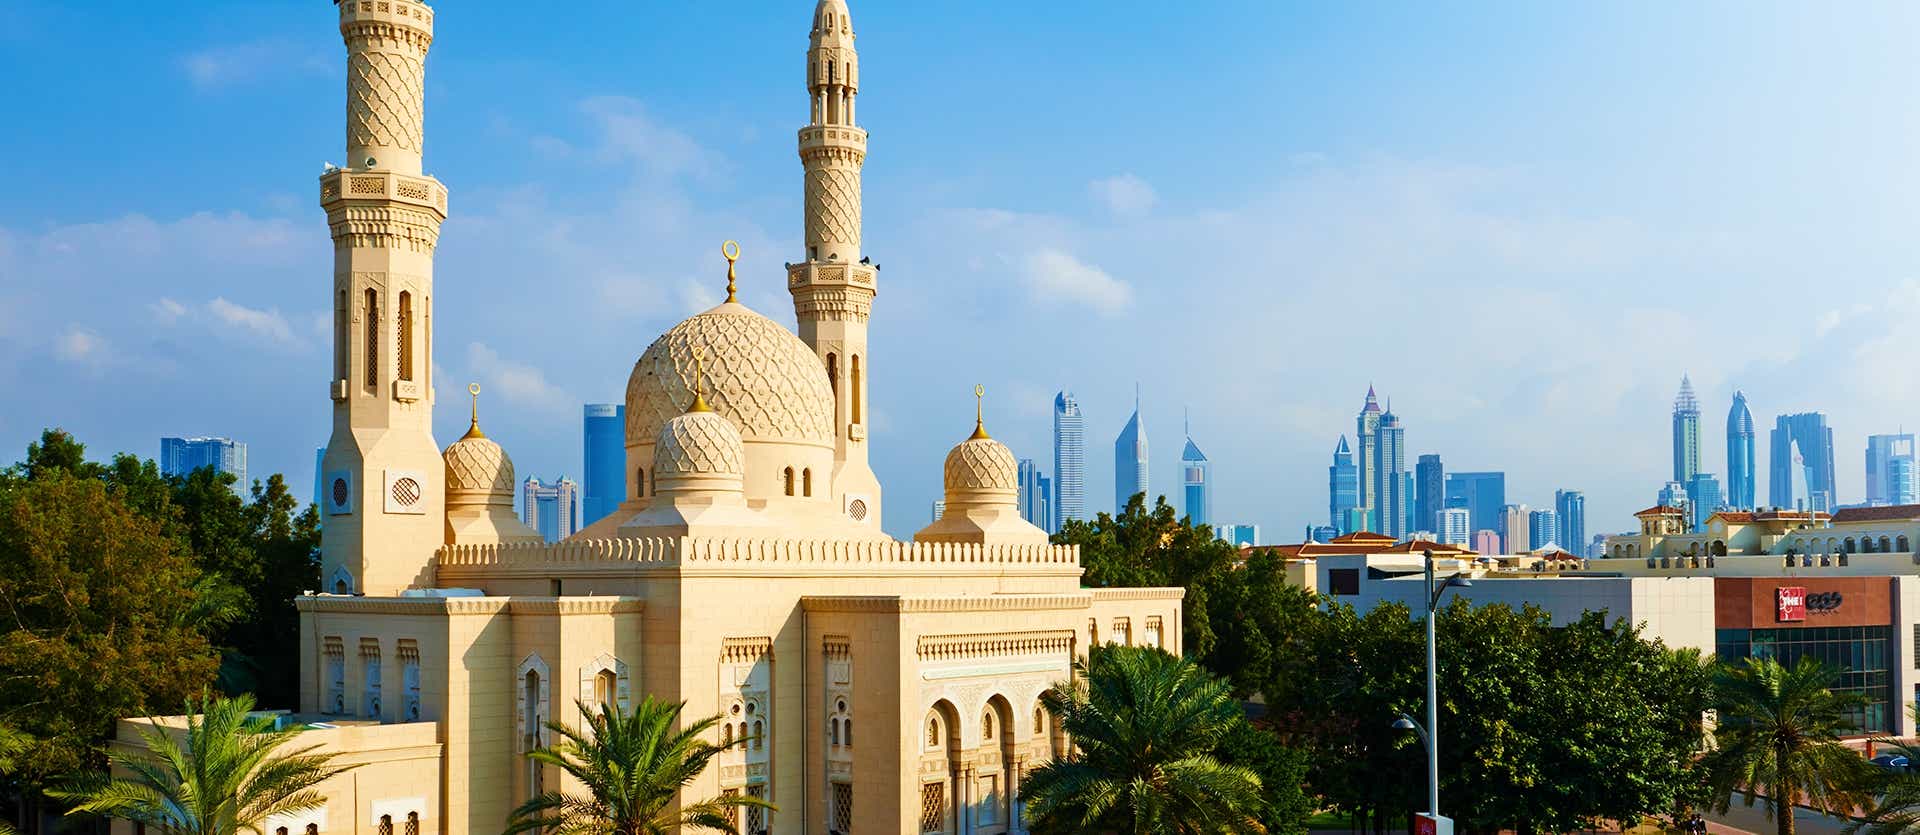 Jumeirah Mosque <span class="iconos separador"></span> Dubai <span class="iconos separador"></span> United Arab Emirates